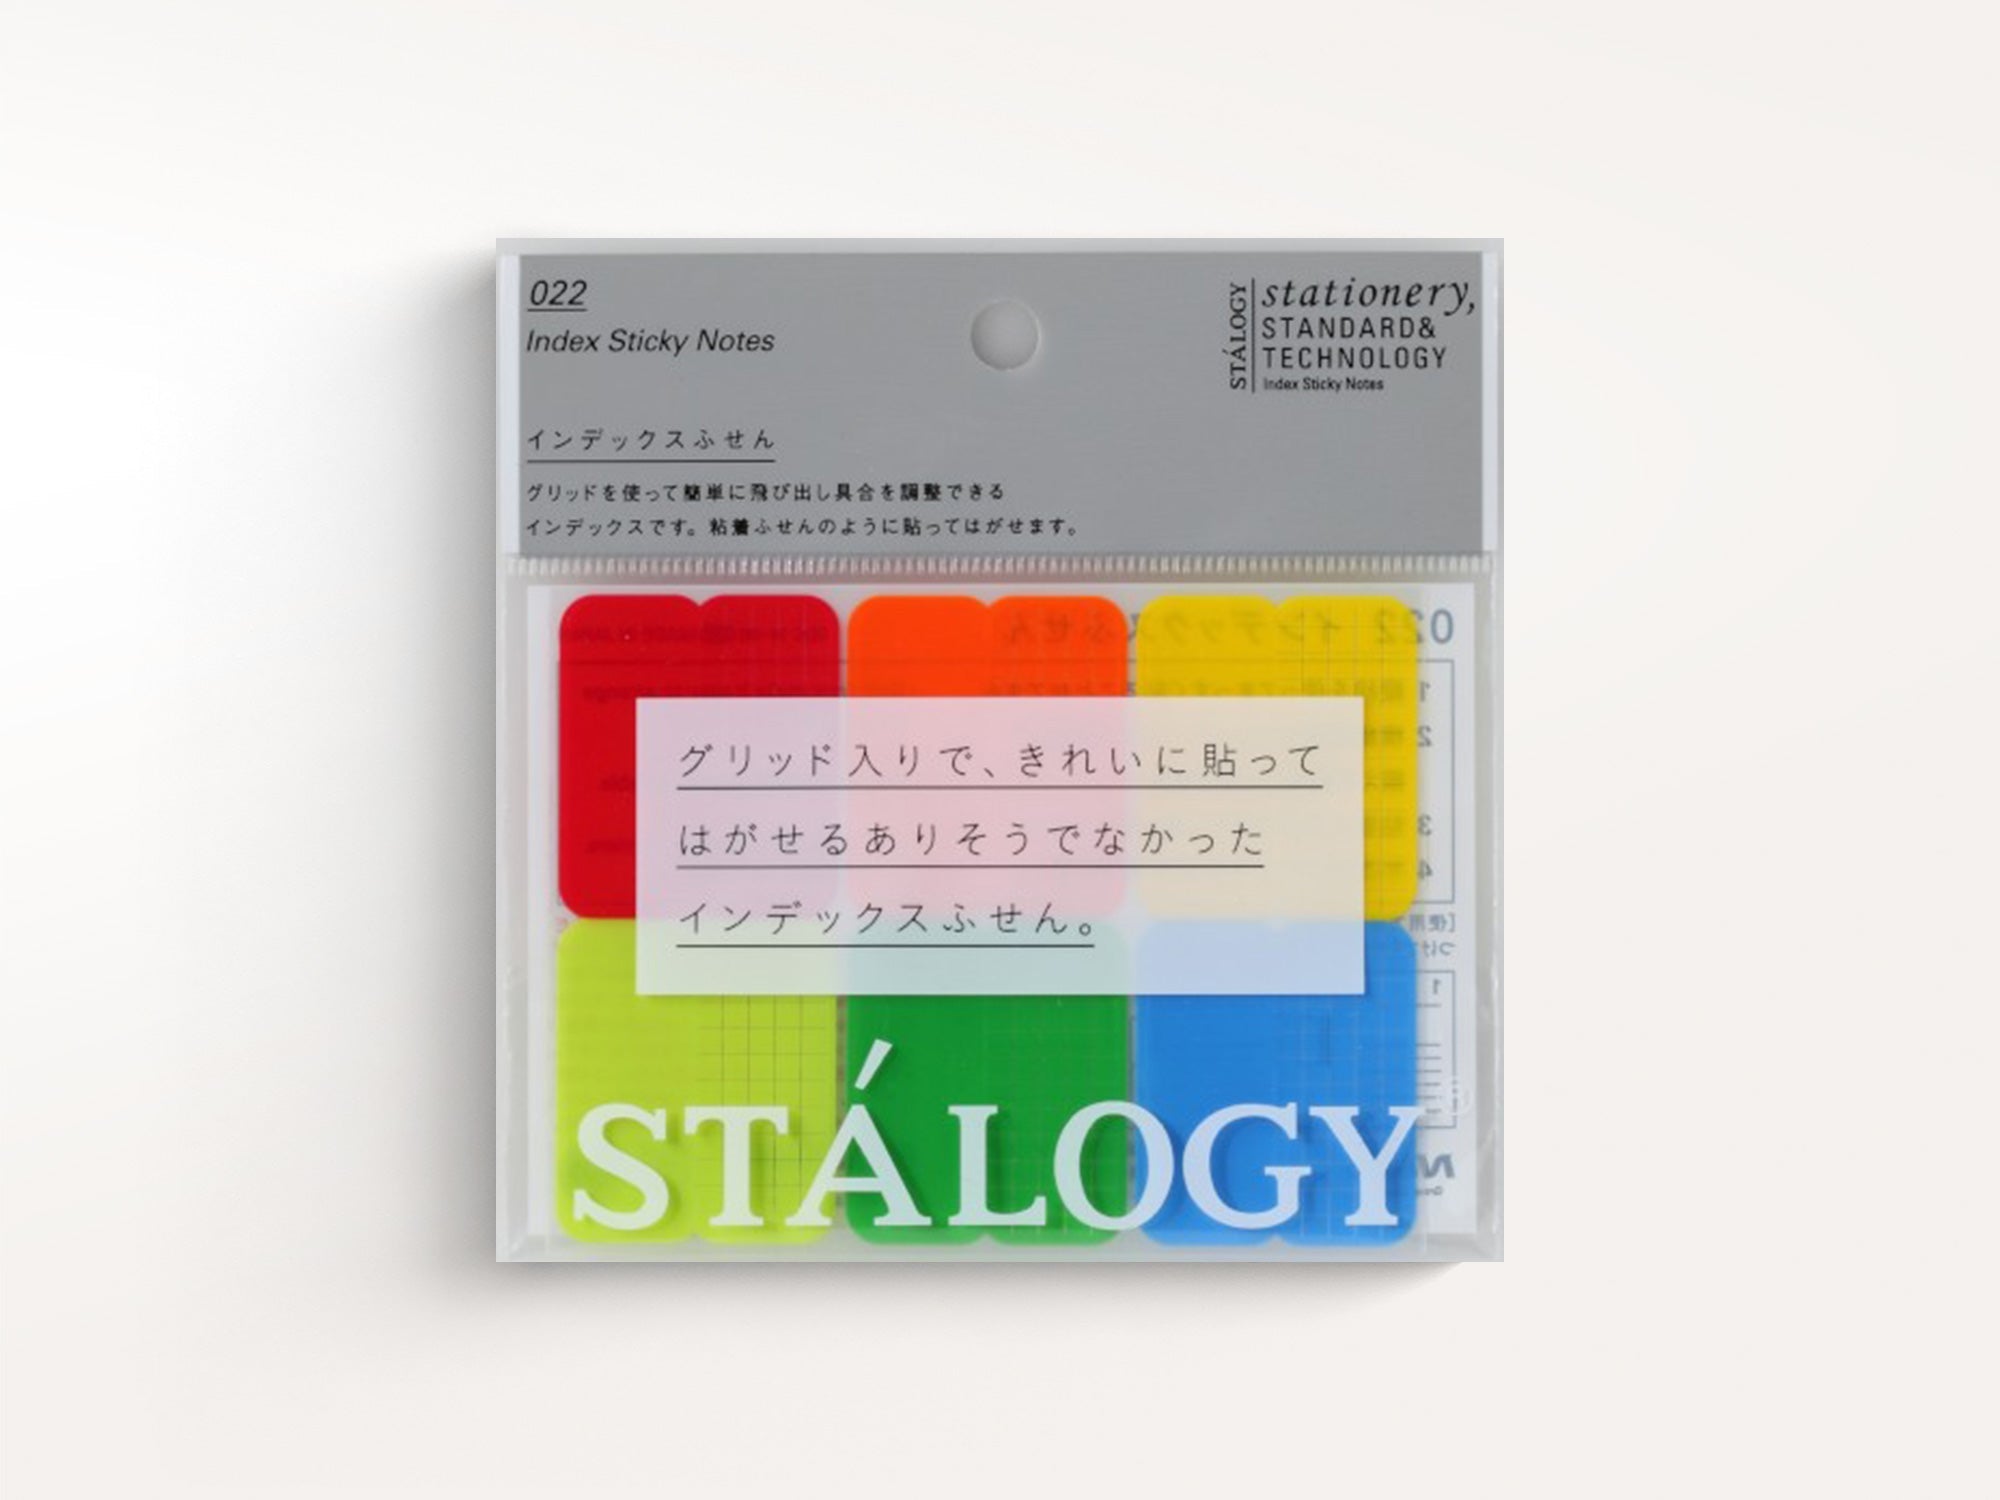 Stalogy: Translucent Sticky Notes Gridded — Stitch Craft